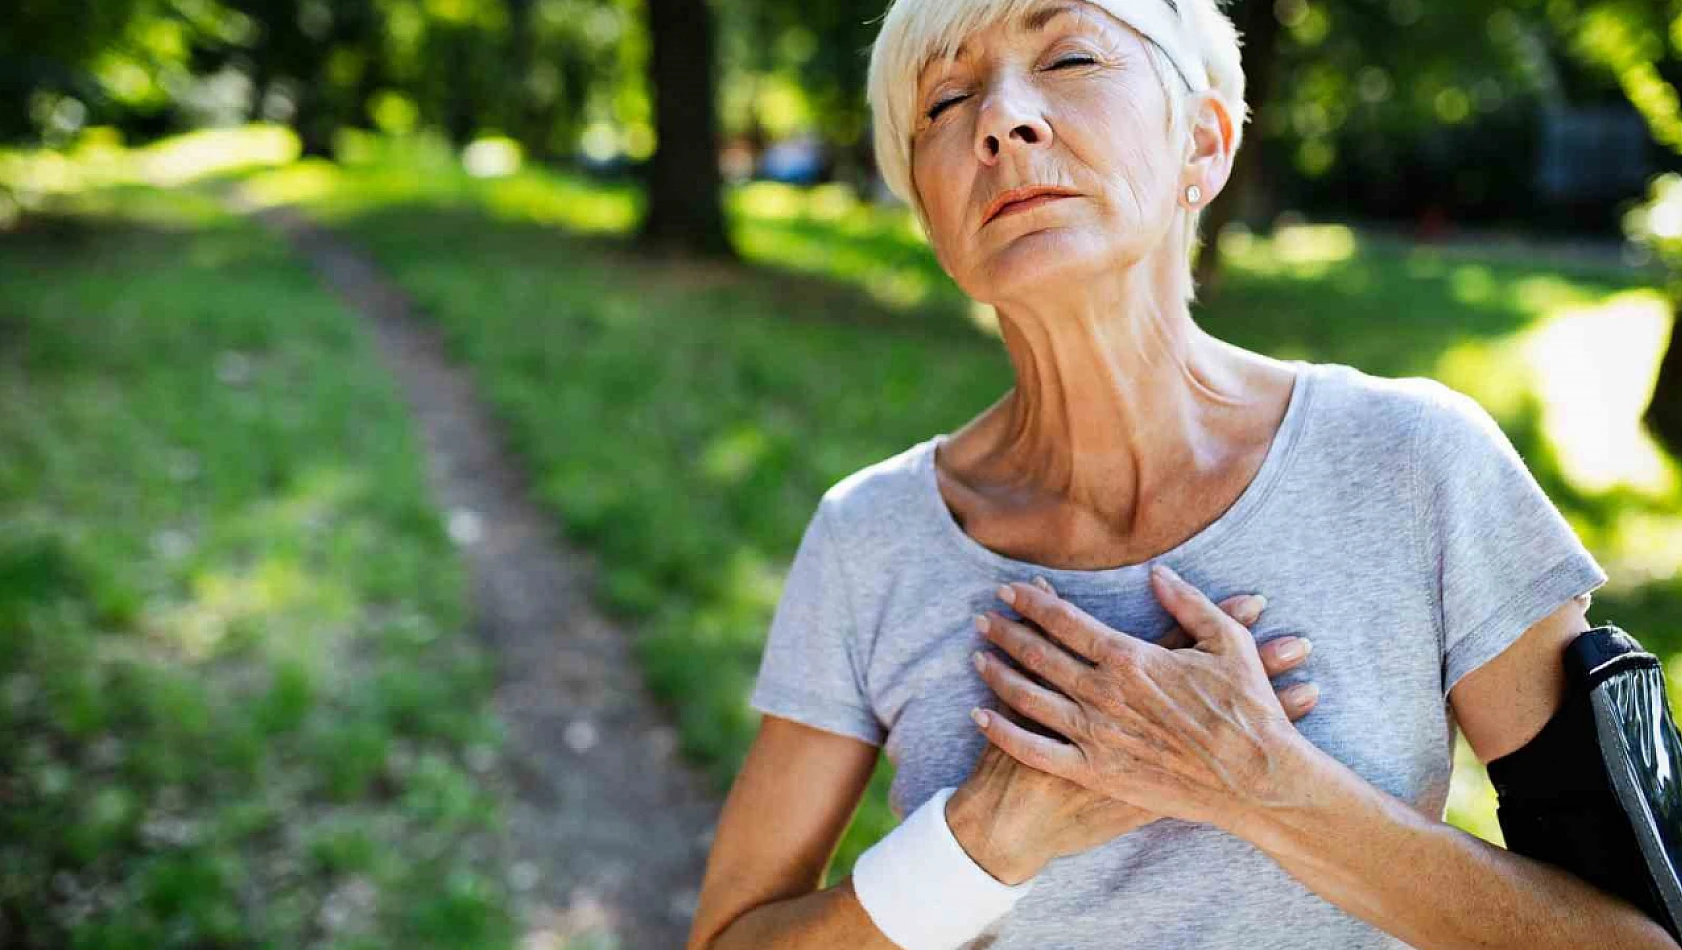 Stresin etkisi, kırık kalp sendromu ve kalp sağlığına etkisi